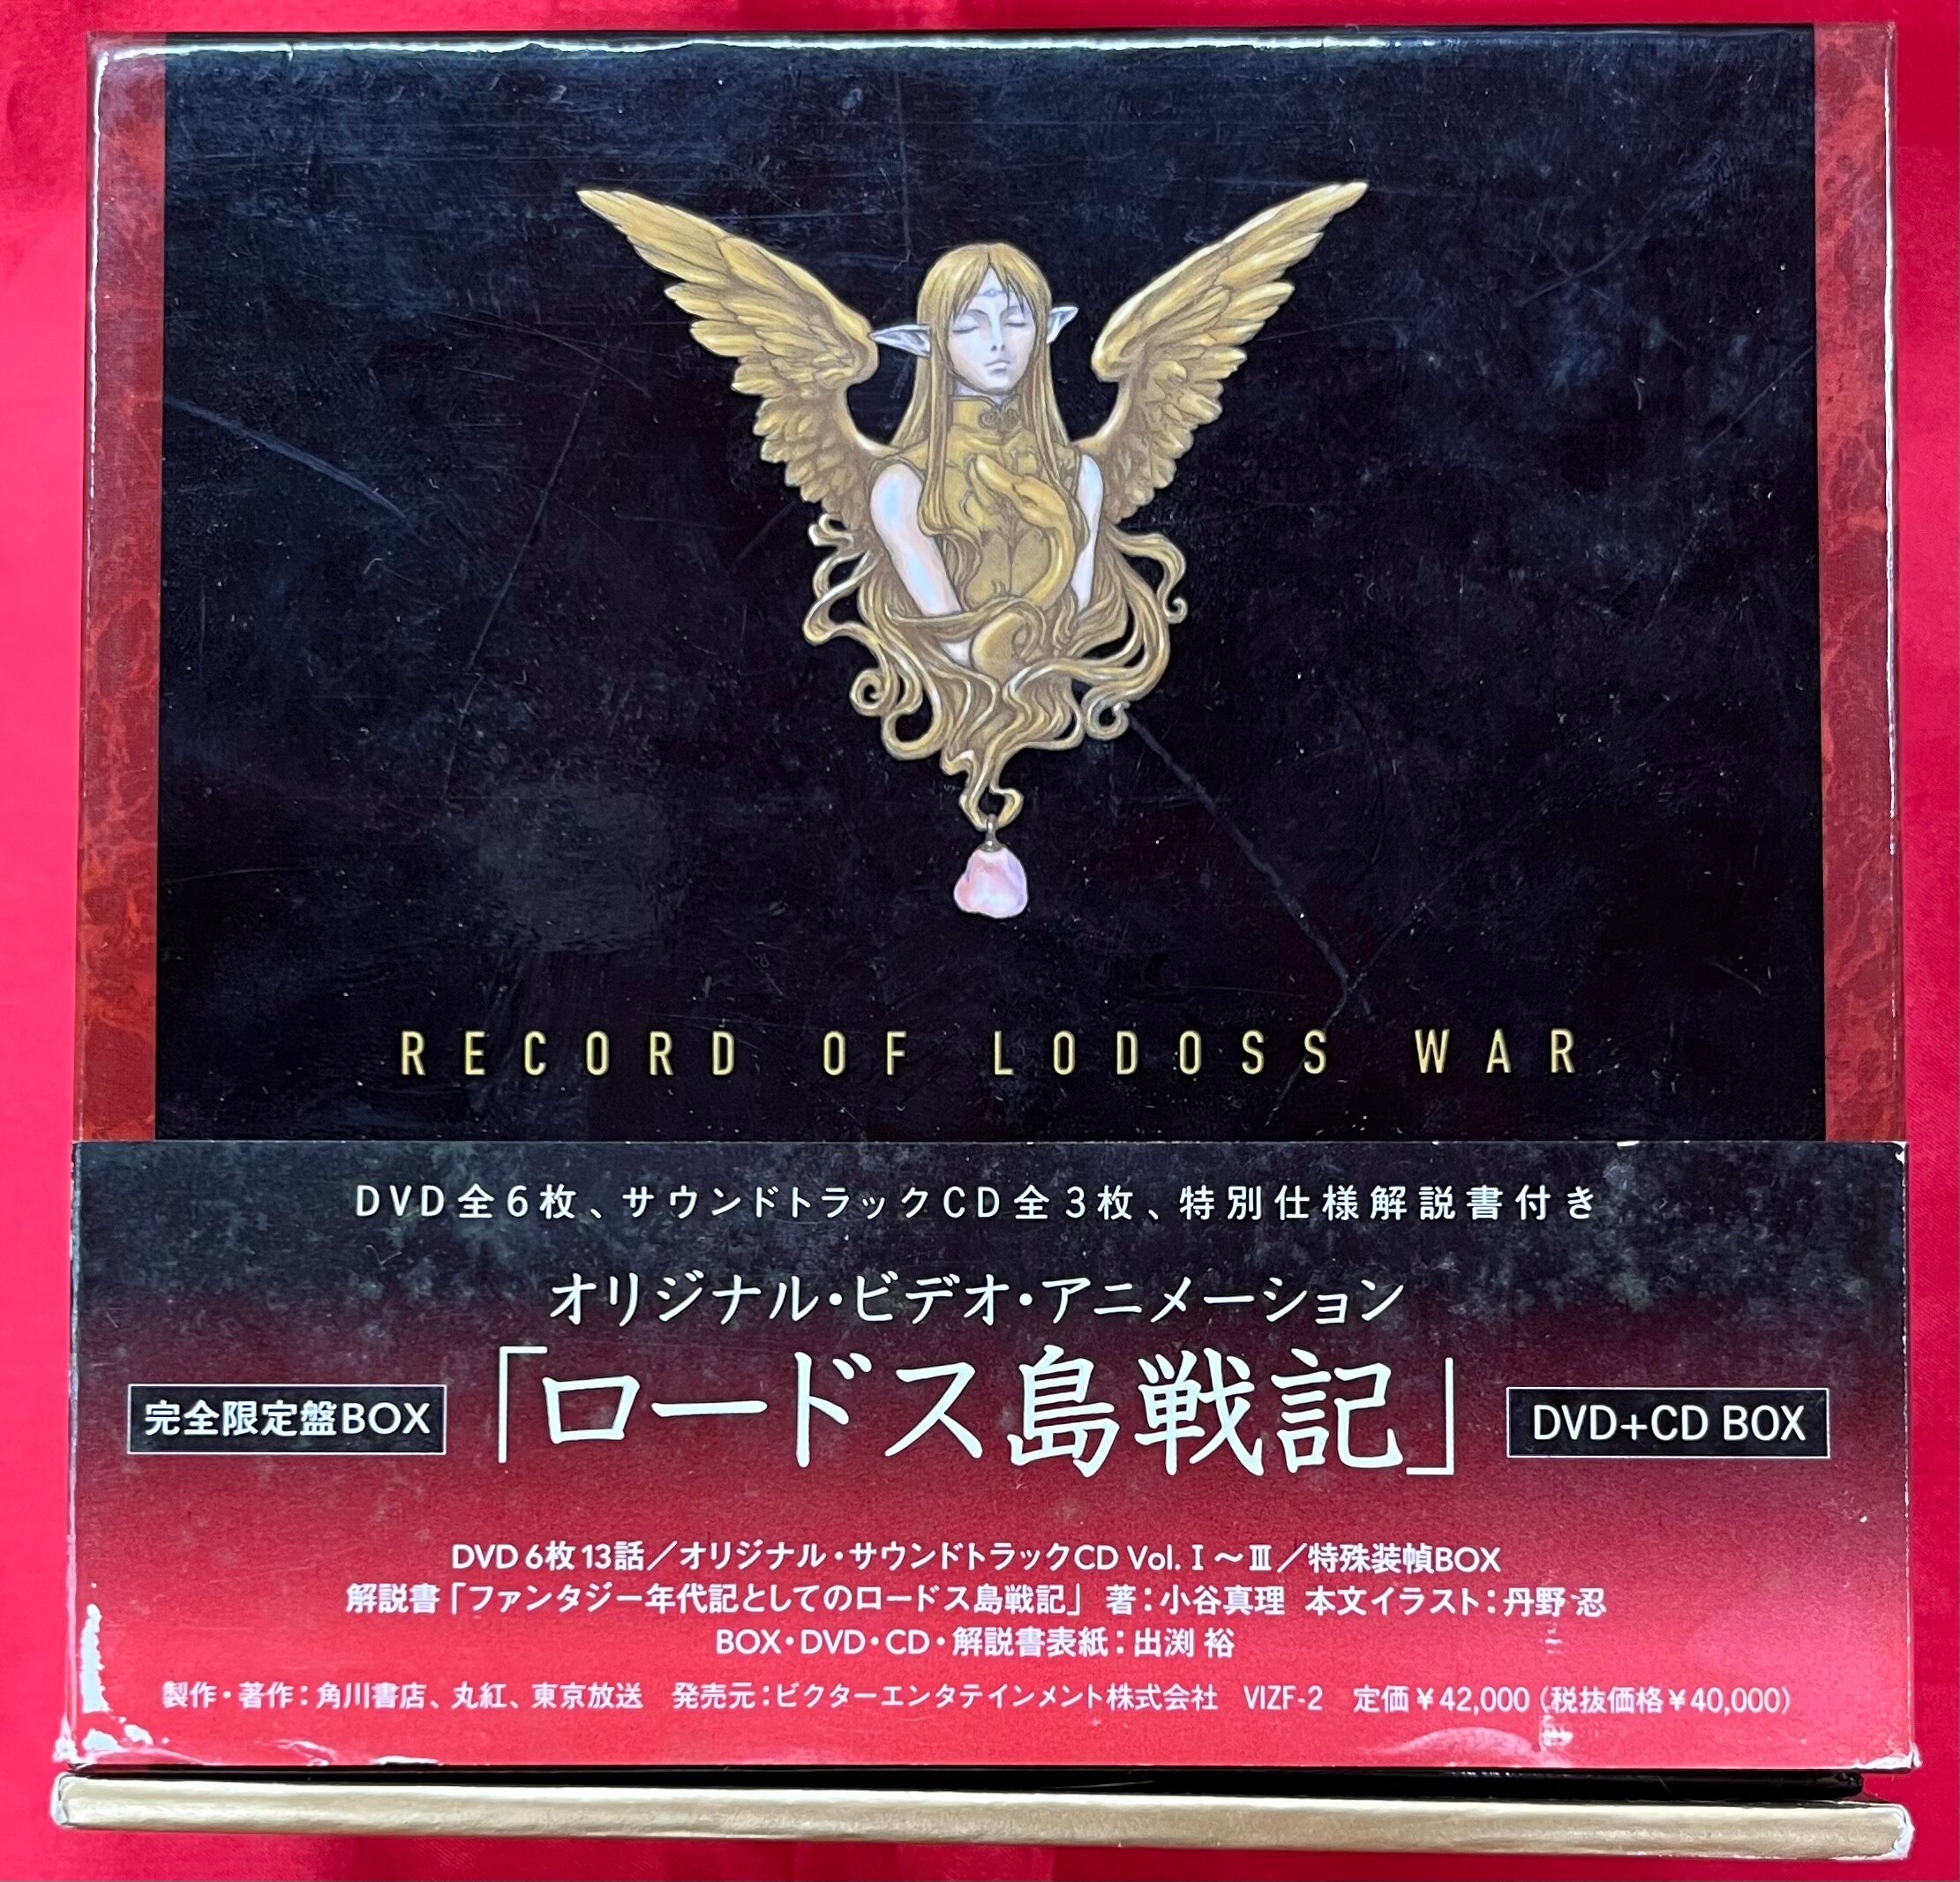 アニメDVD 初回)ロードス島戦記(OVA) DVD+CD BOX | まんだらけ Mandarake